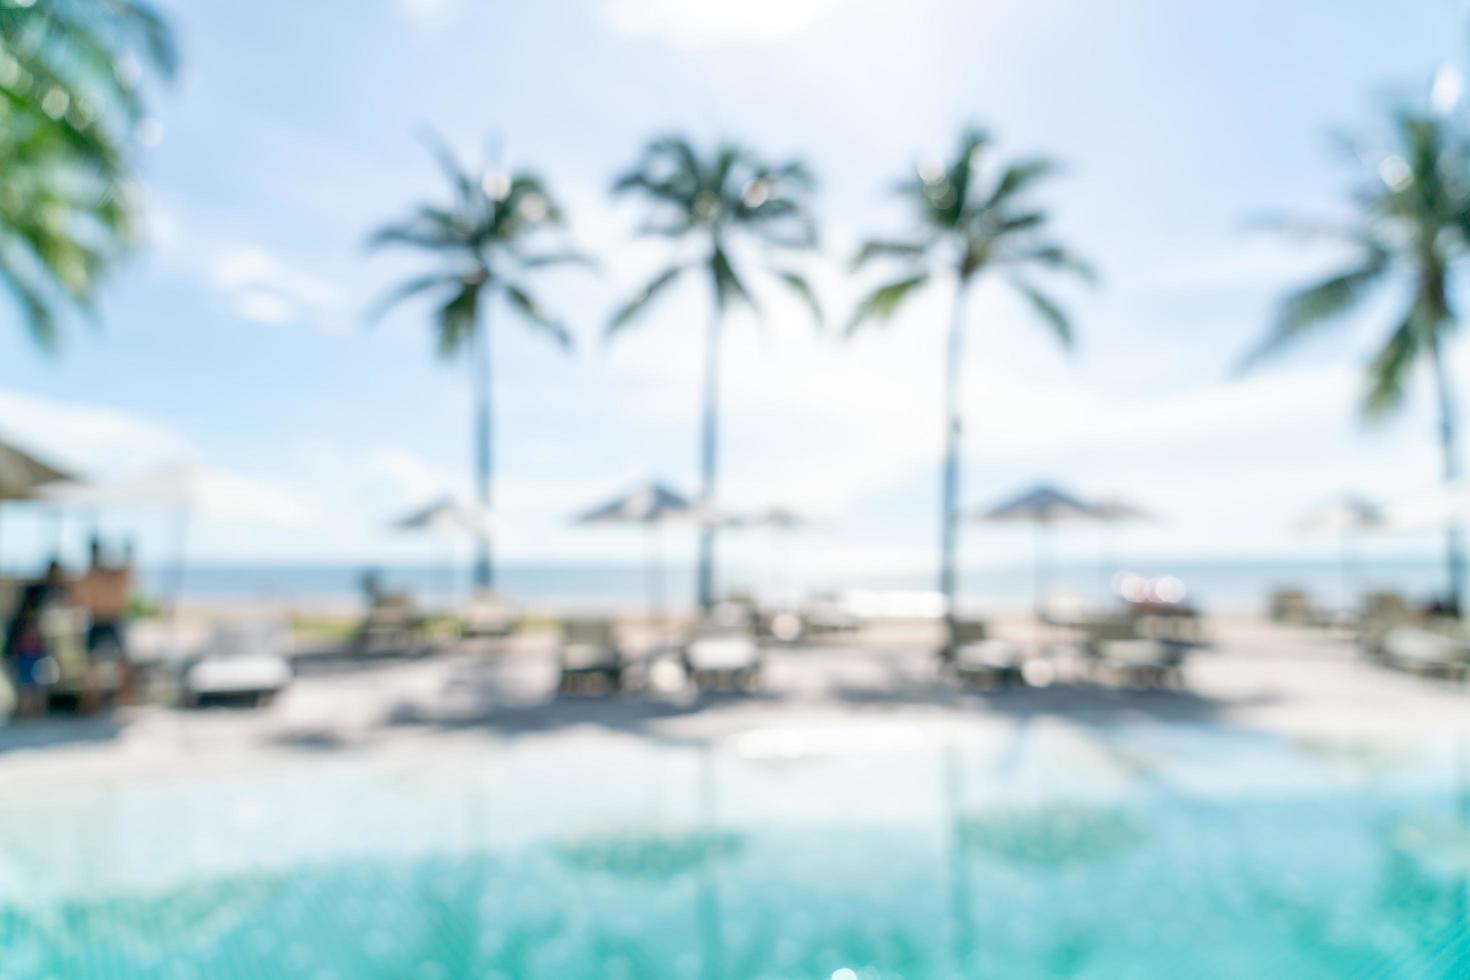 abstrakt suddighetssängpöl runt simbassängen i lyxhotellresortsort för bakgrund - semester- och semesterbegrepp foto